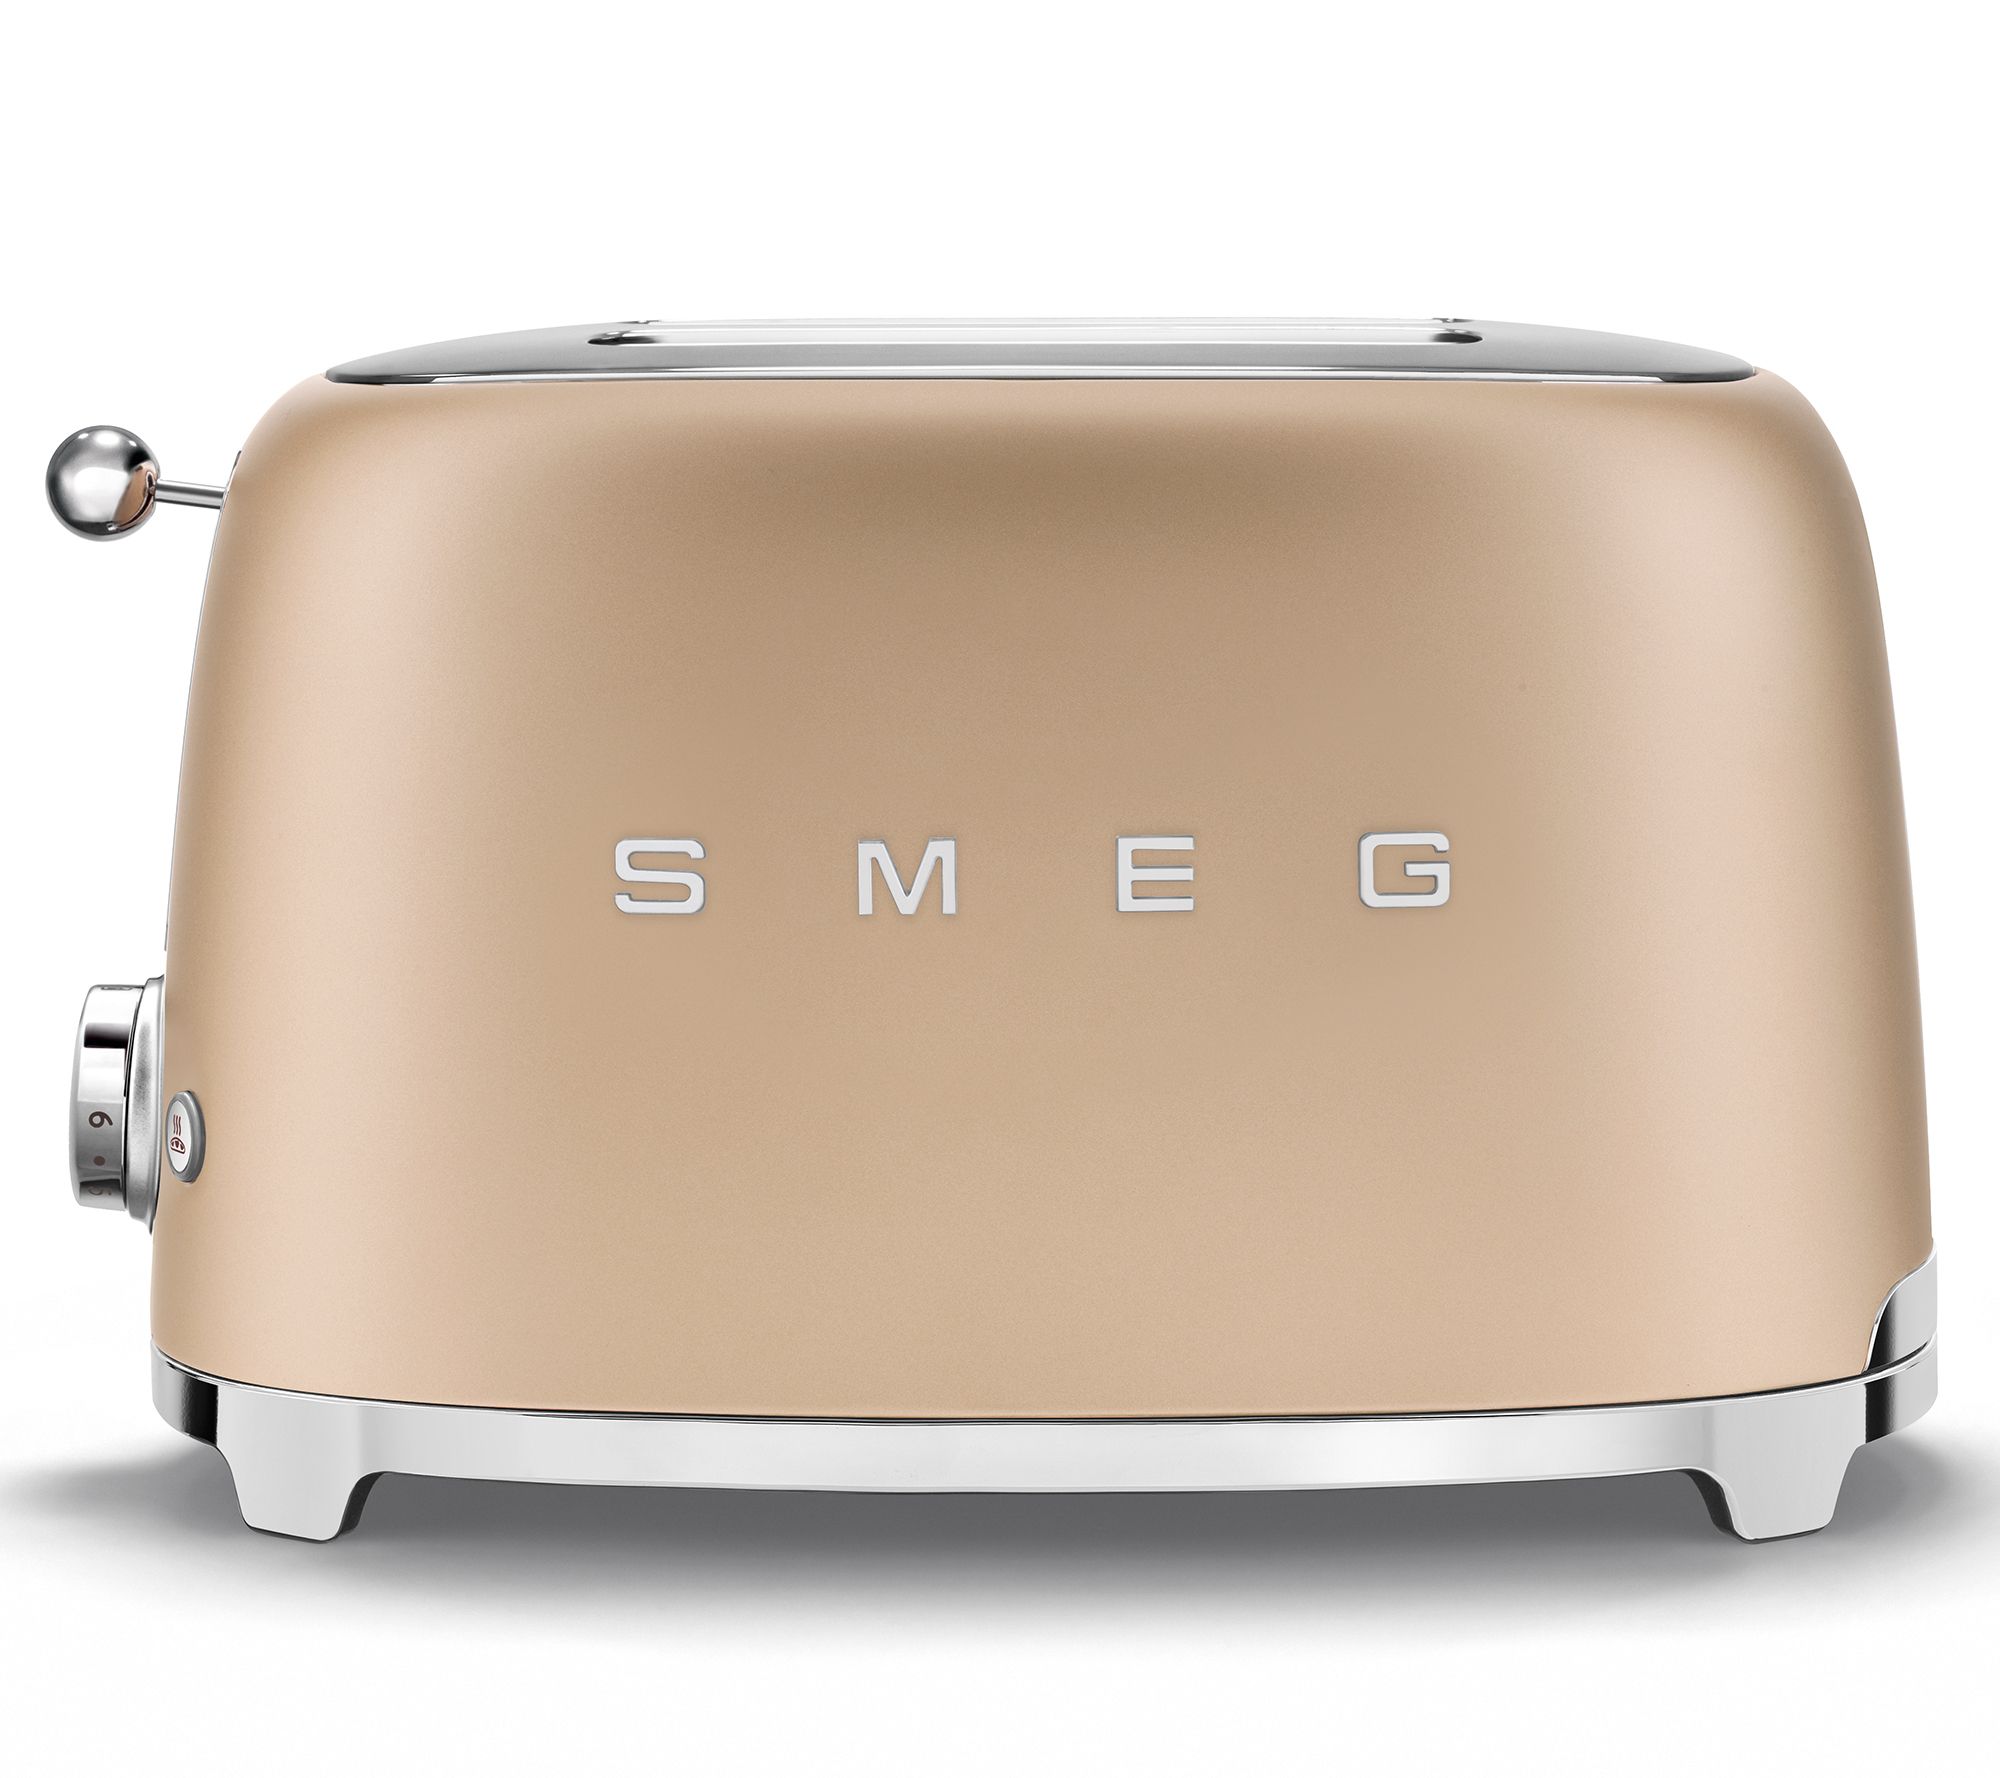 SMEG '50s Retro-Style 2-Slice Toaster - QVC.com